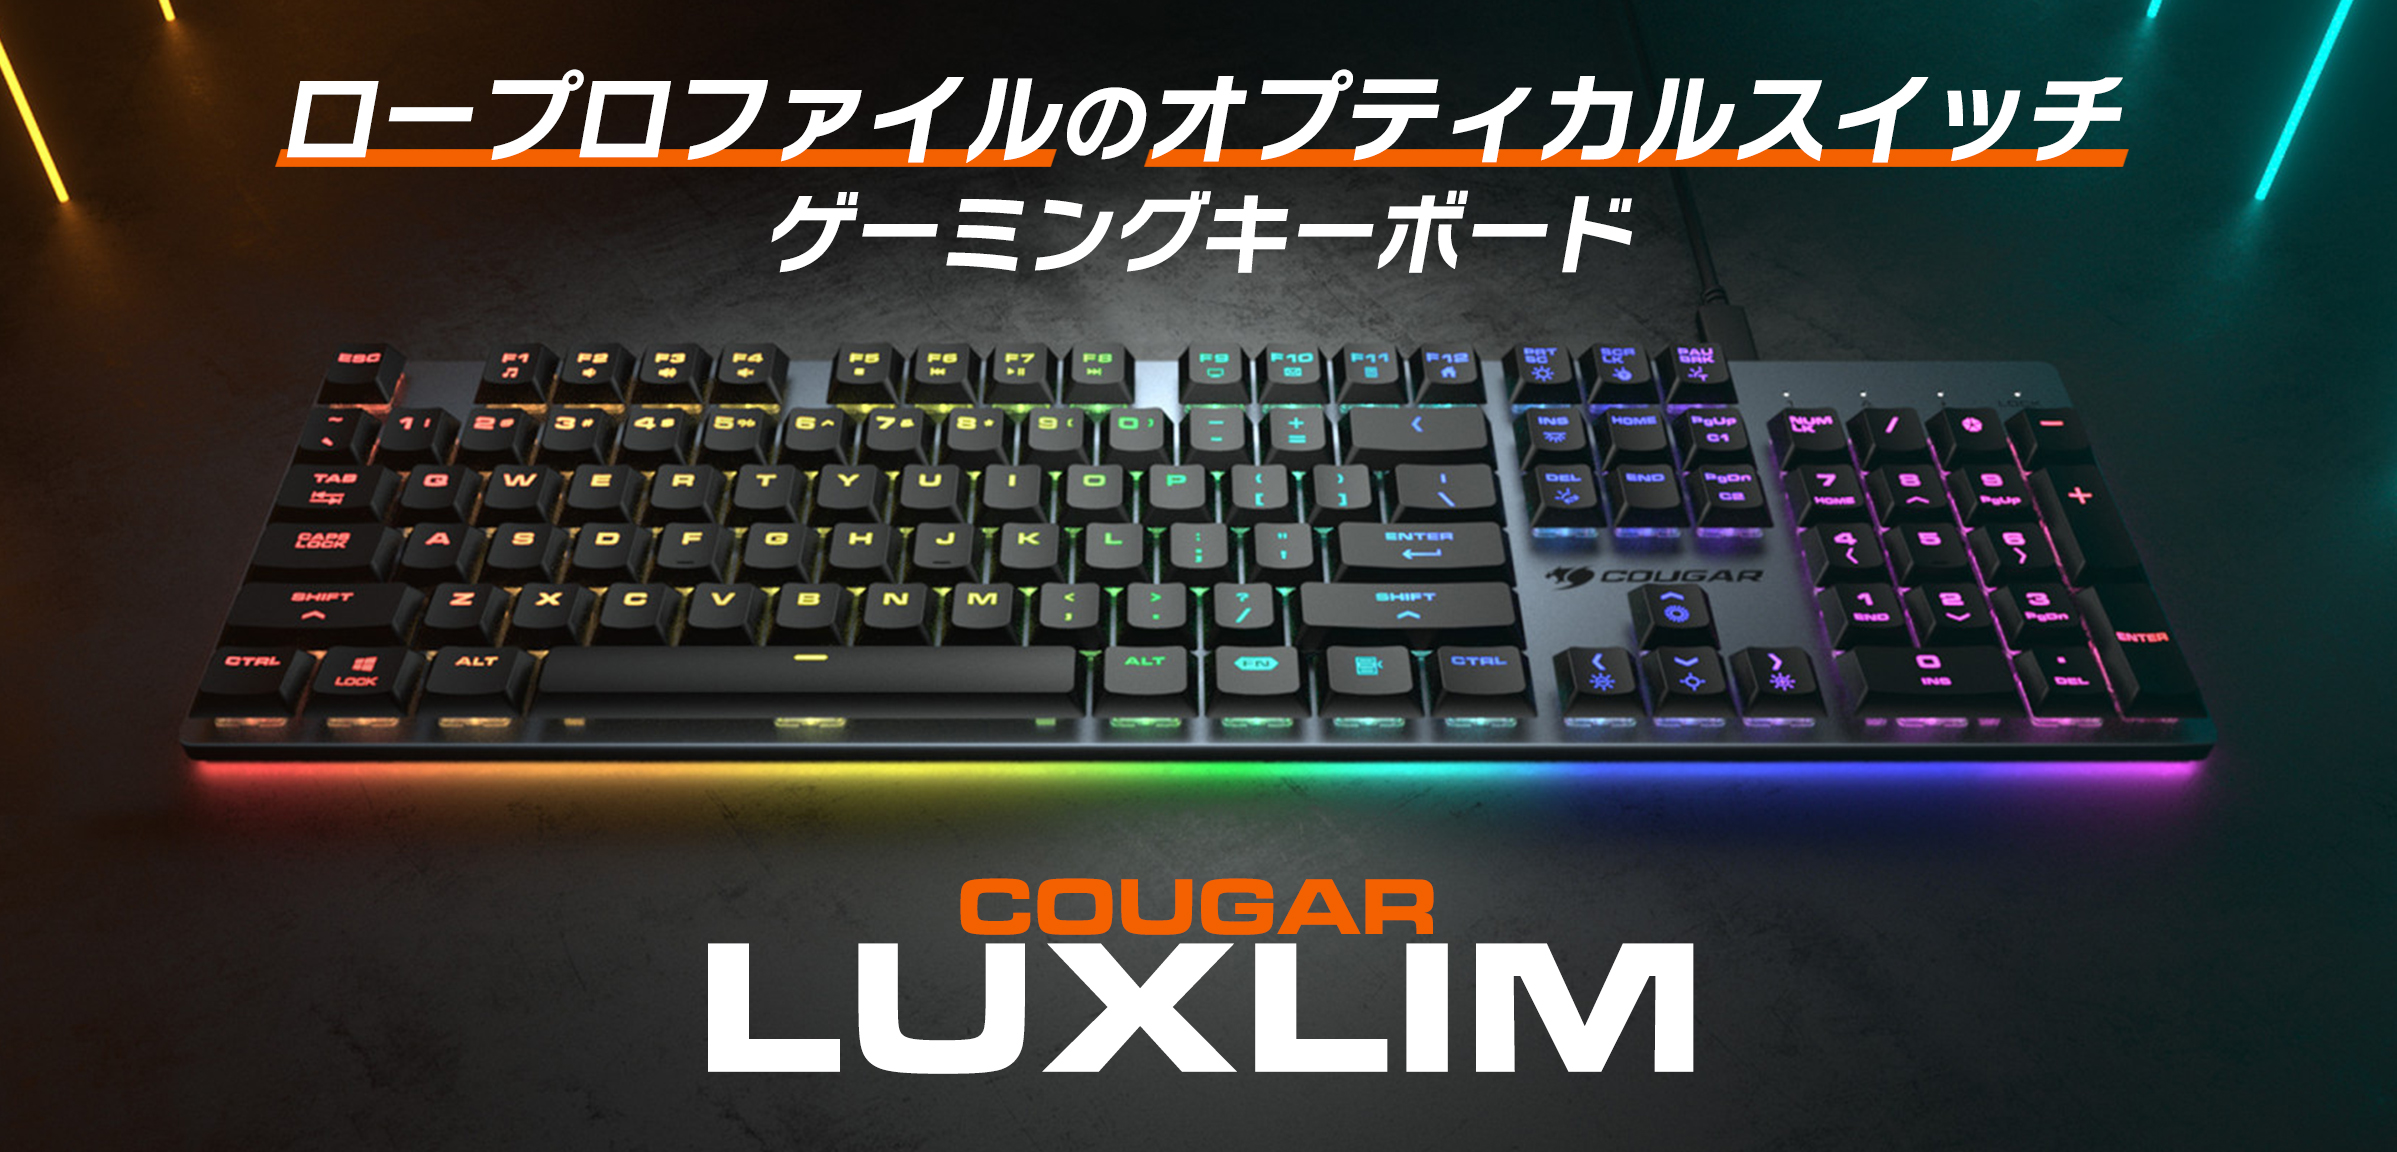 マイルストーン、COUGARよりオプティカルスイッチ採用の超薄型ゲーミングキーボード 「COUGAR  LUXLIM」を10月12日(水)より取り扱い開始 | 株式会社マイルストーン